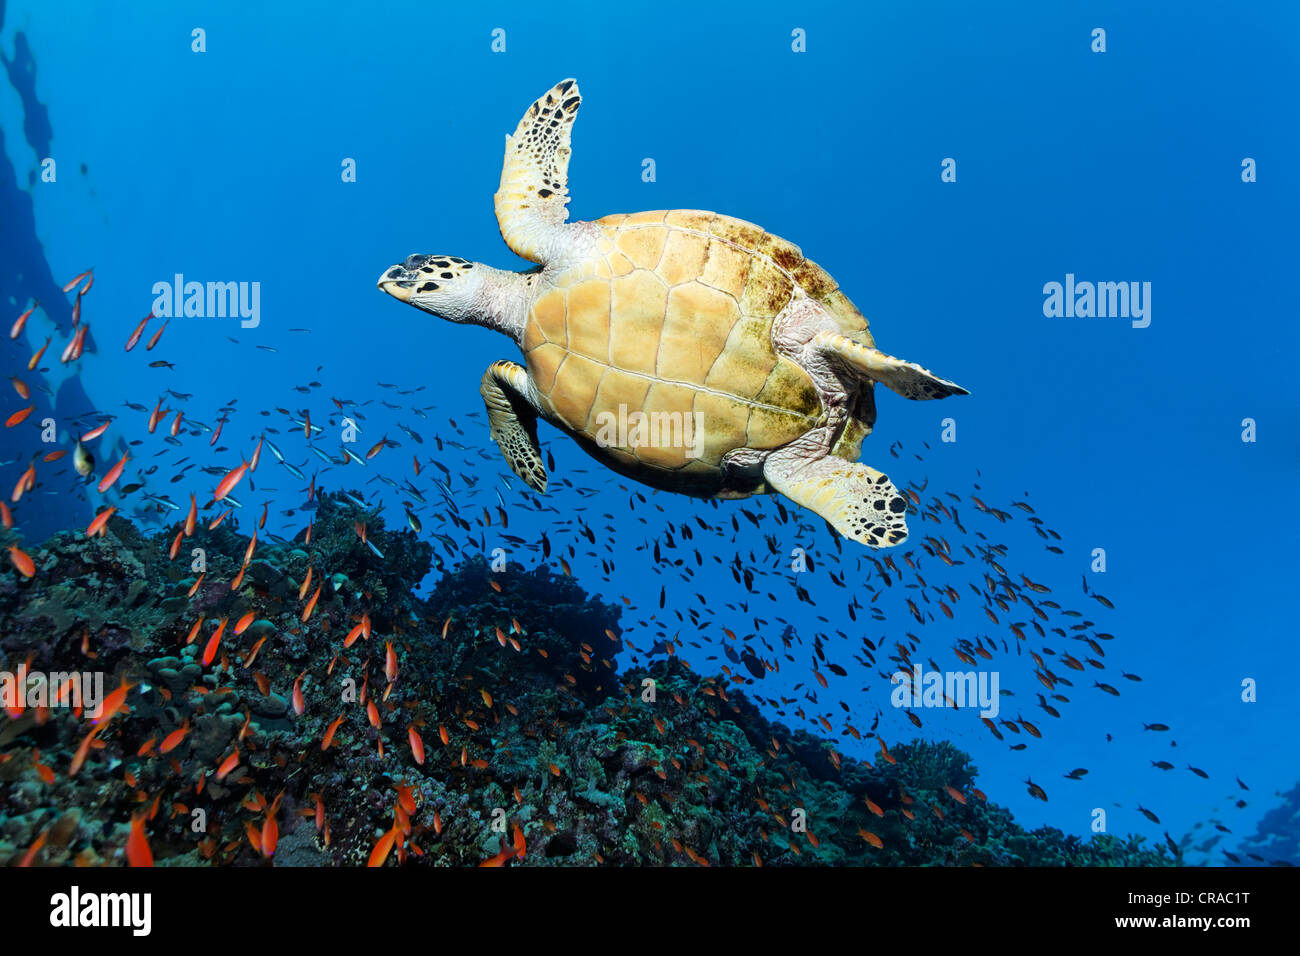 Tortuga carey (Eretmochelys imbricata) nadando por encima de un arrecife de coral, visto desde abajo, Sharp Sinead, Egipto, Mar Rojo, África Foto de stock